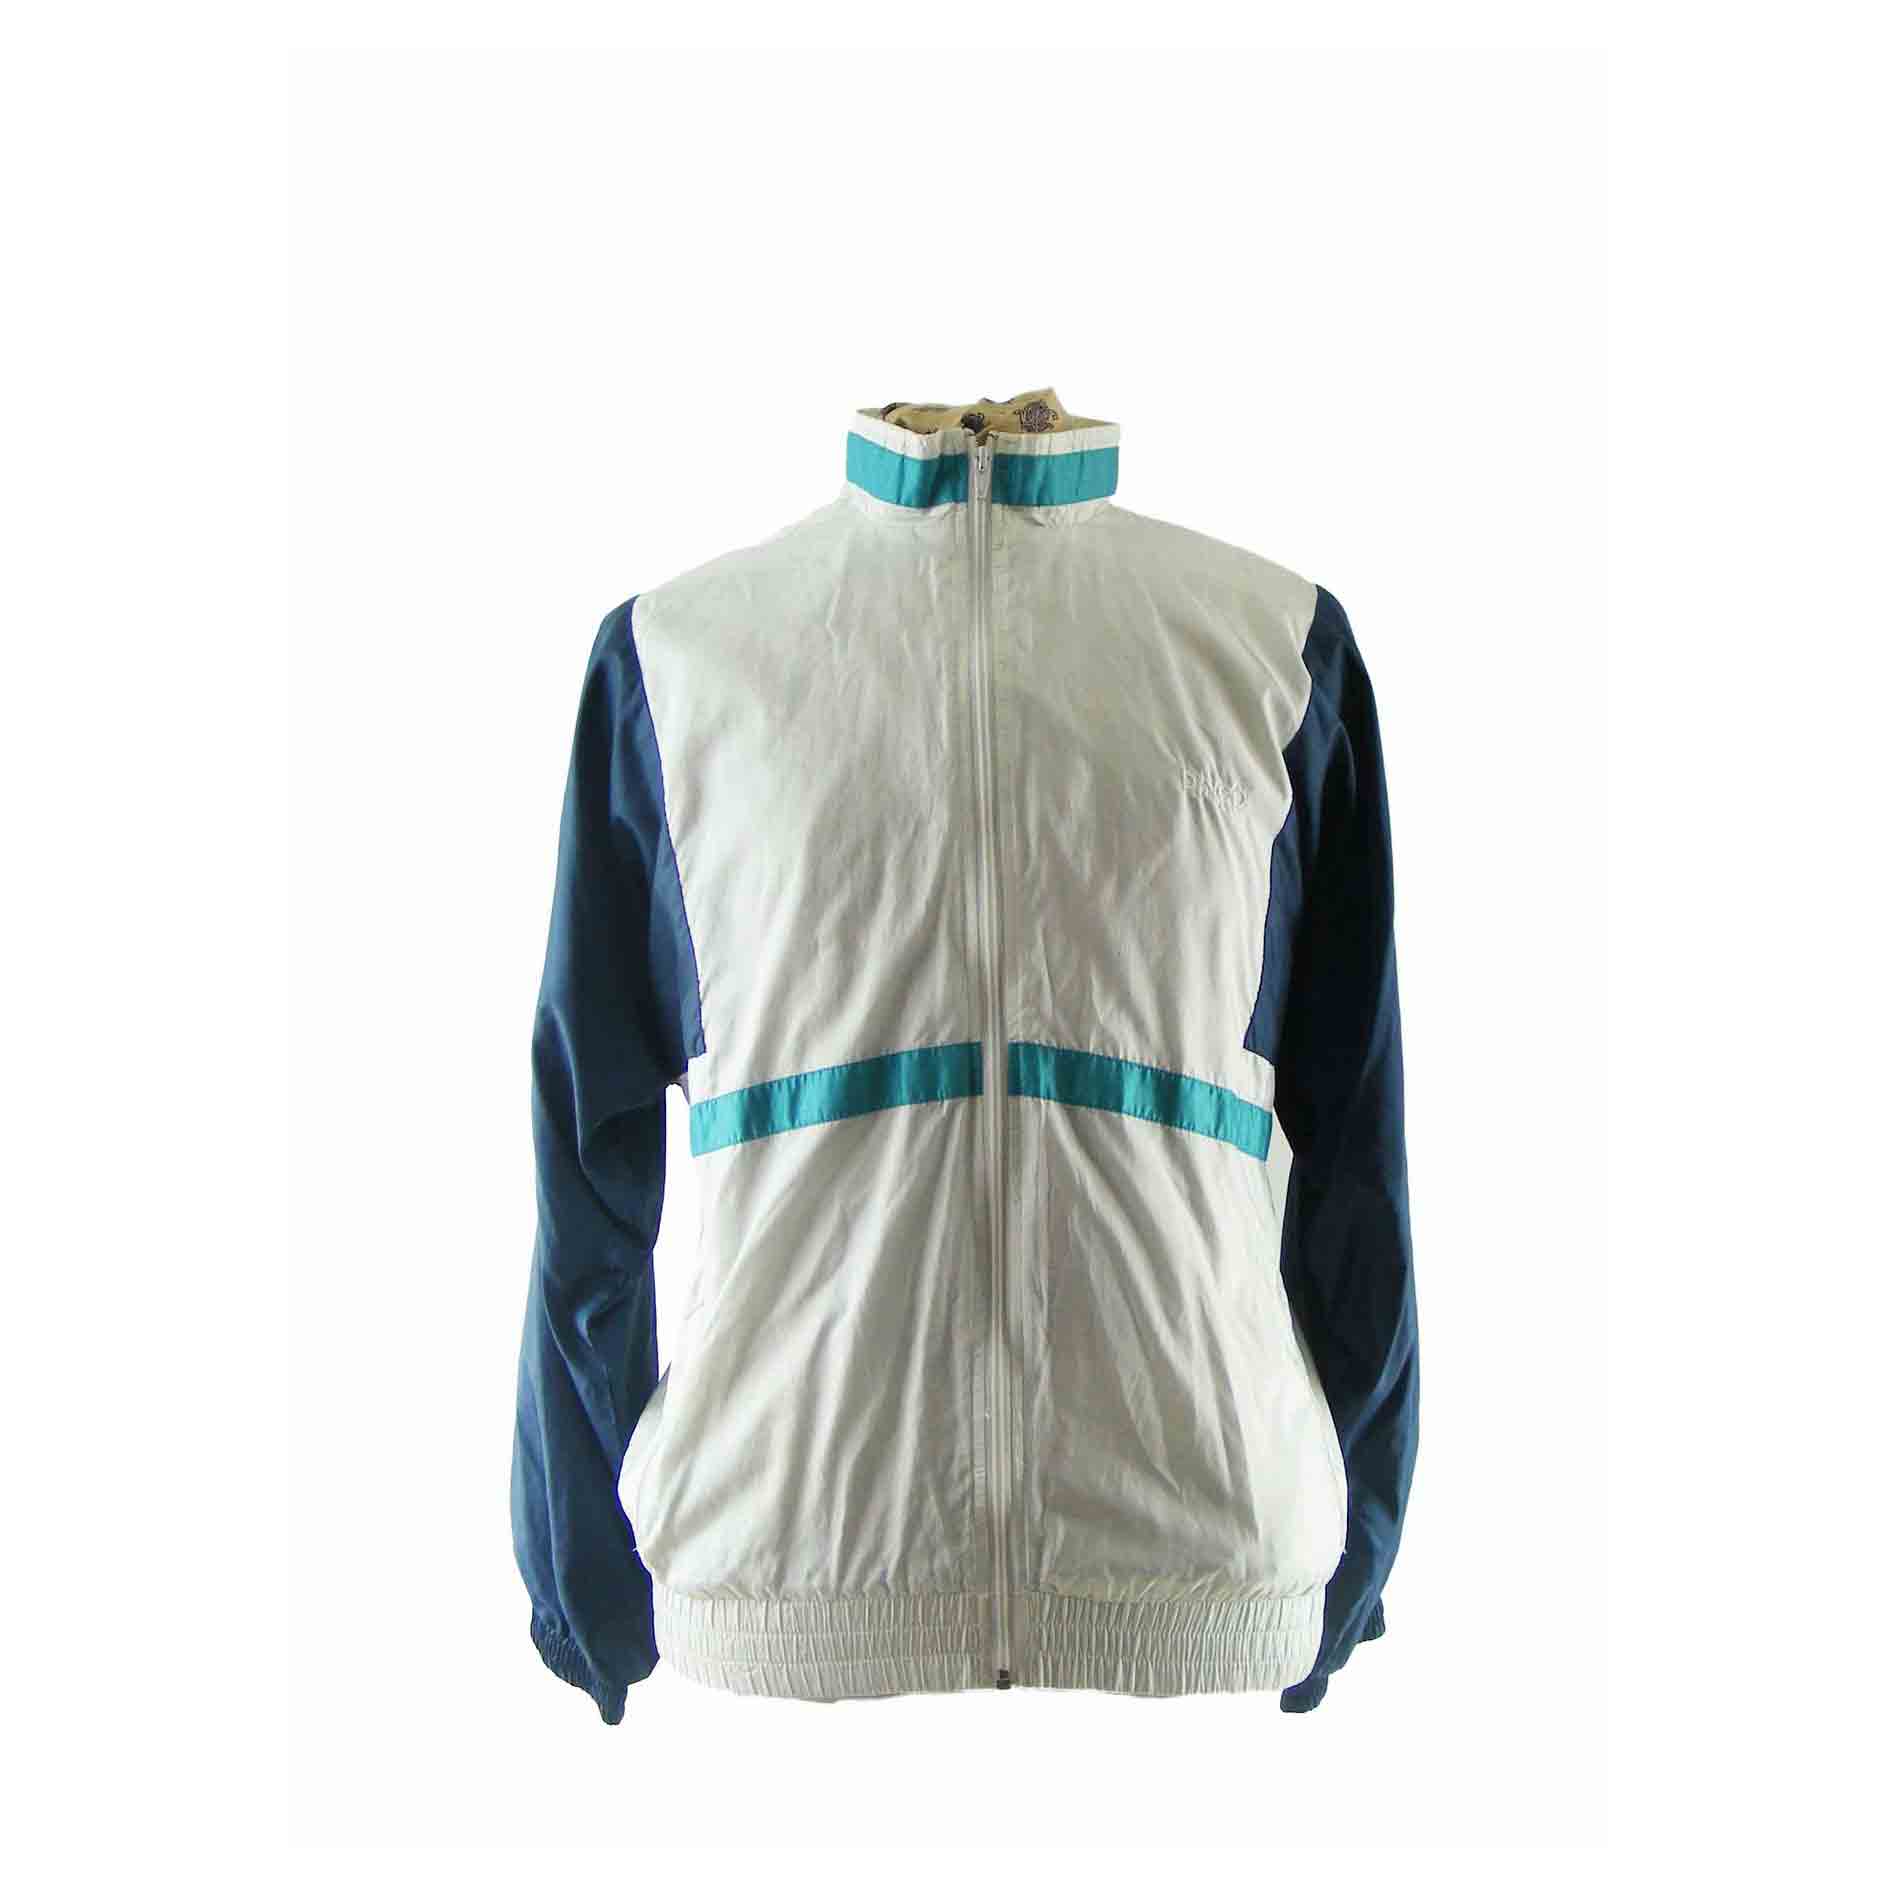 80s Dingo Blue & White shell suit top - L - Blue 17 Vintage Clothing